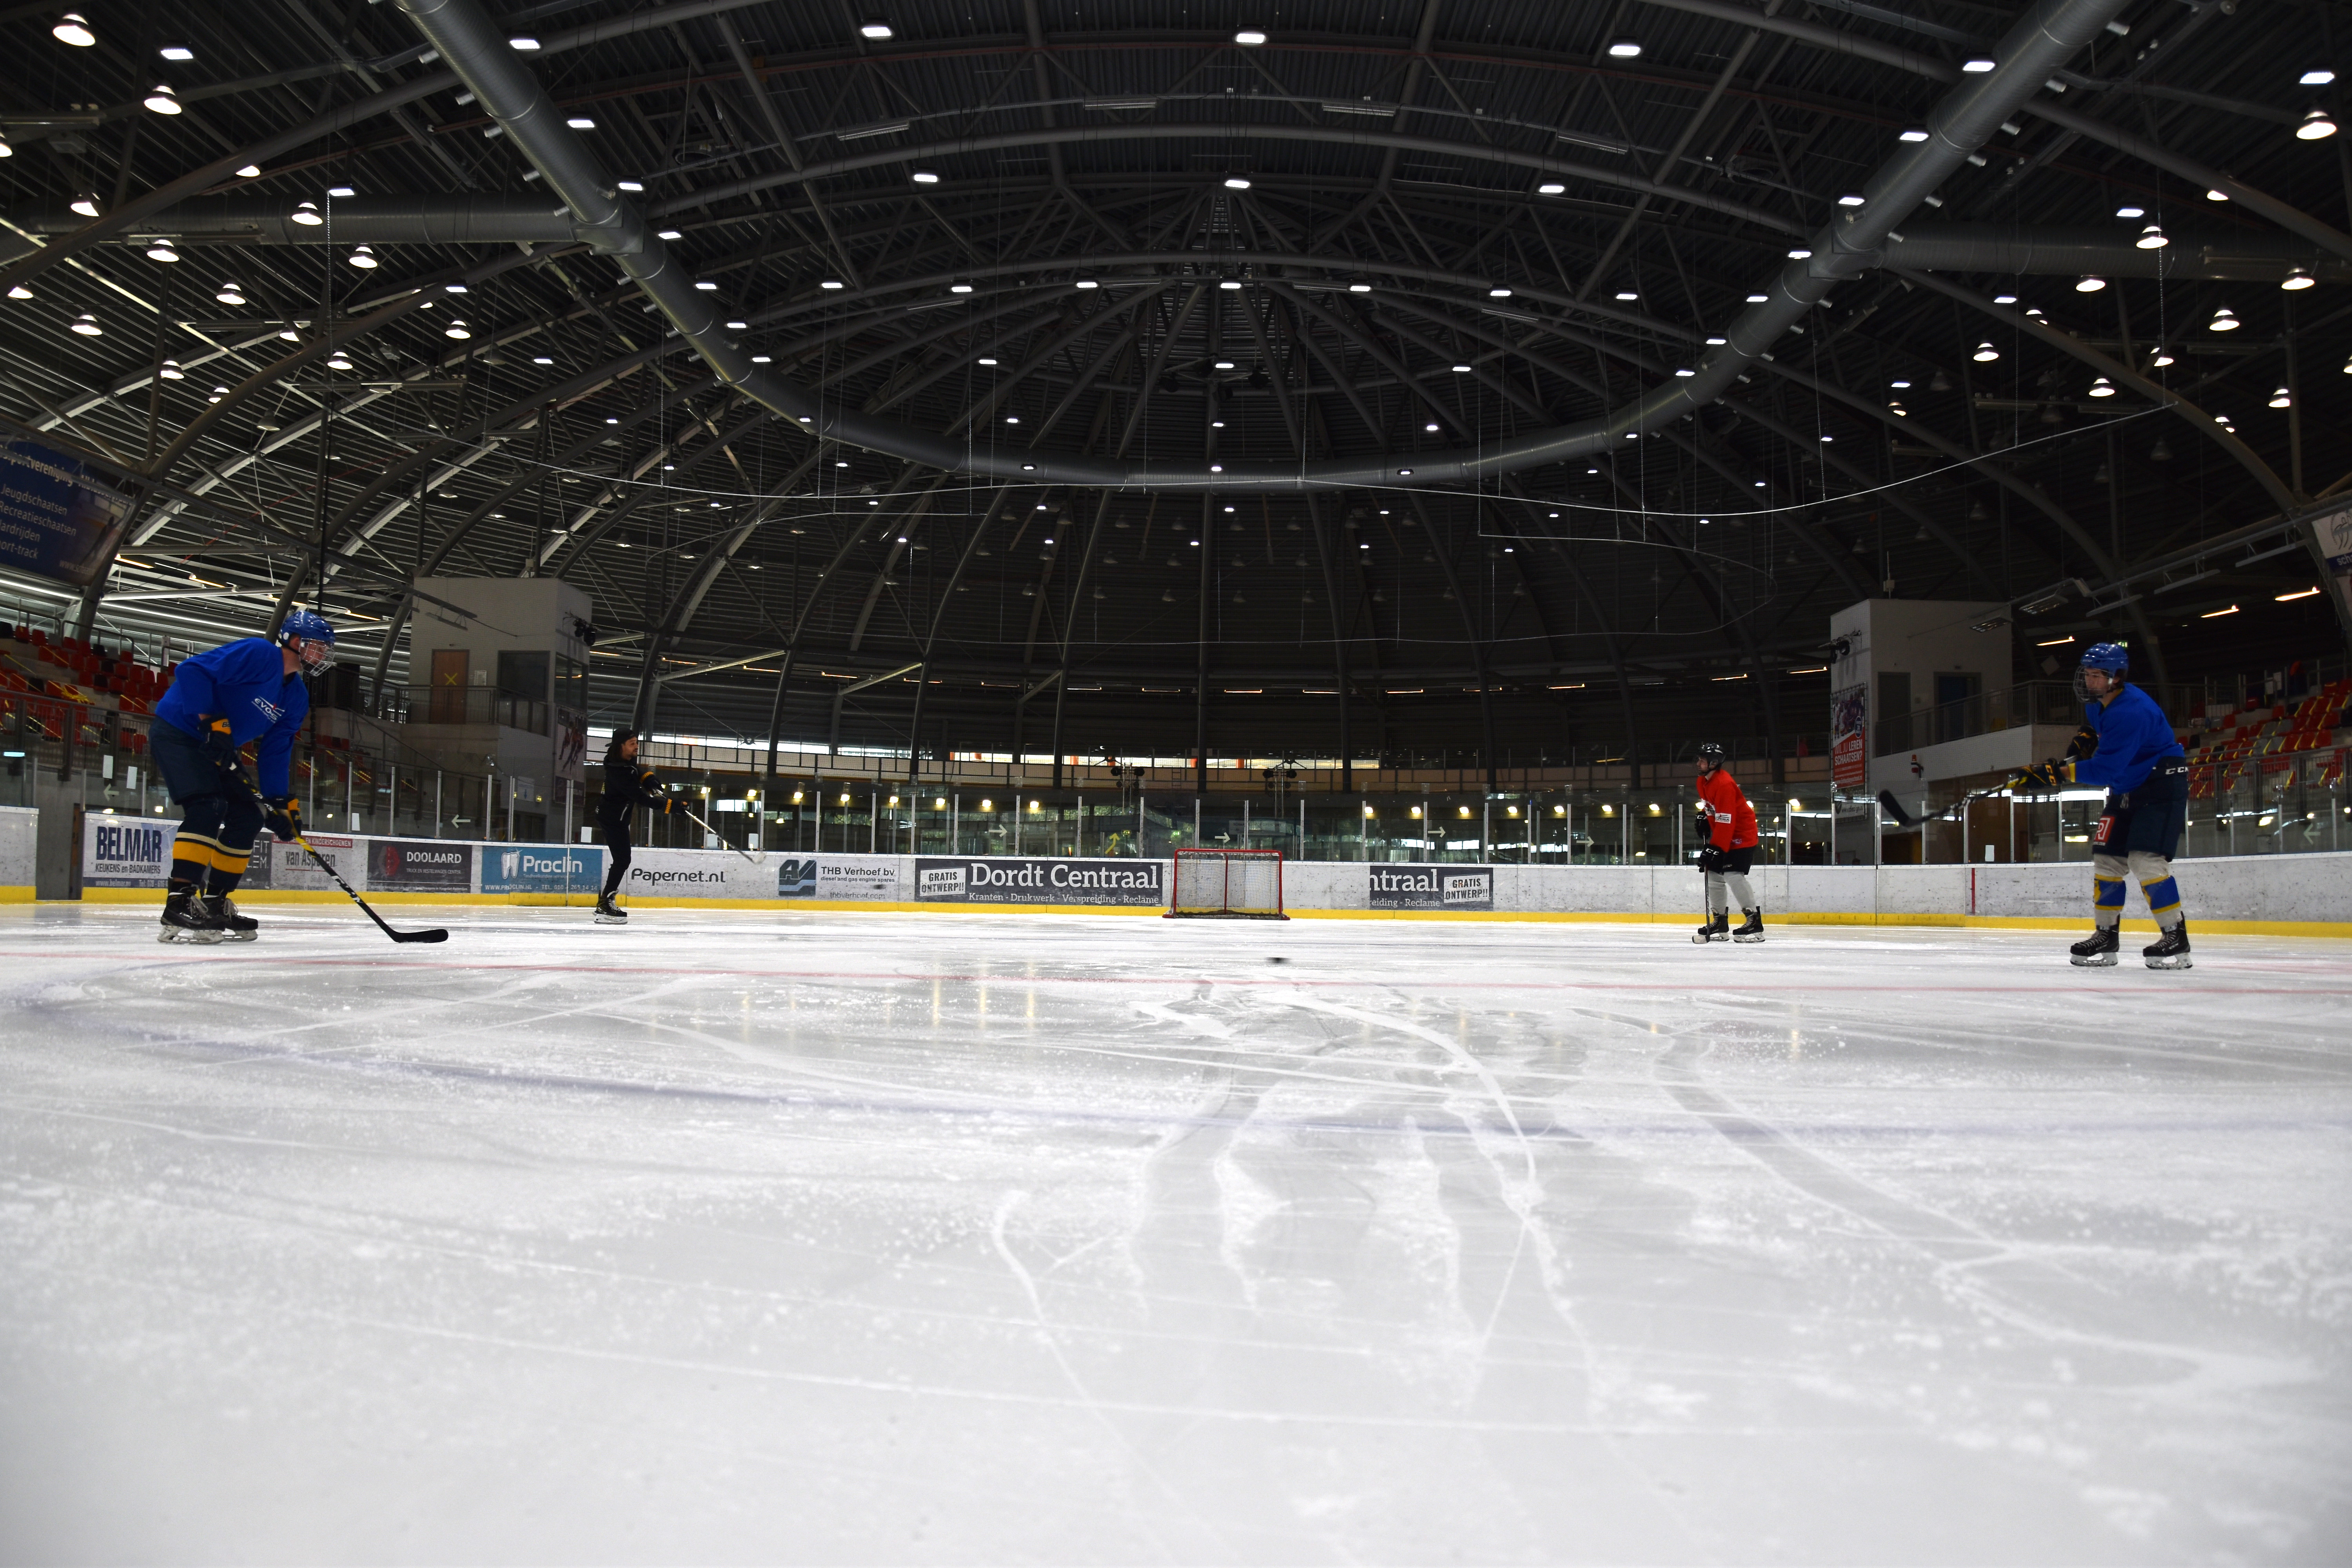 Leer ijshockey spelen bij Optisport Dordrecht. Dit is op de ijsbaan waar je kan schaatsen.